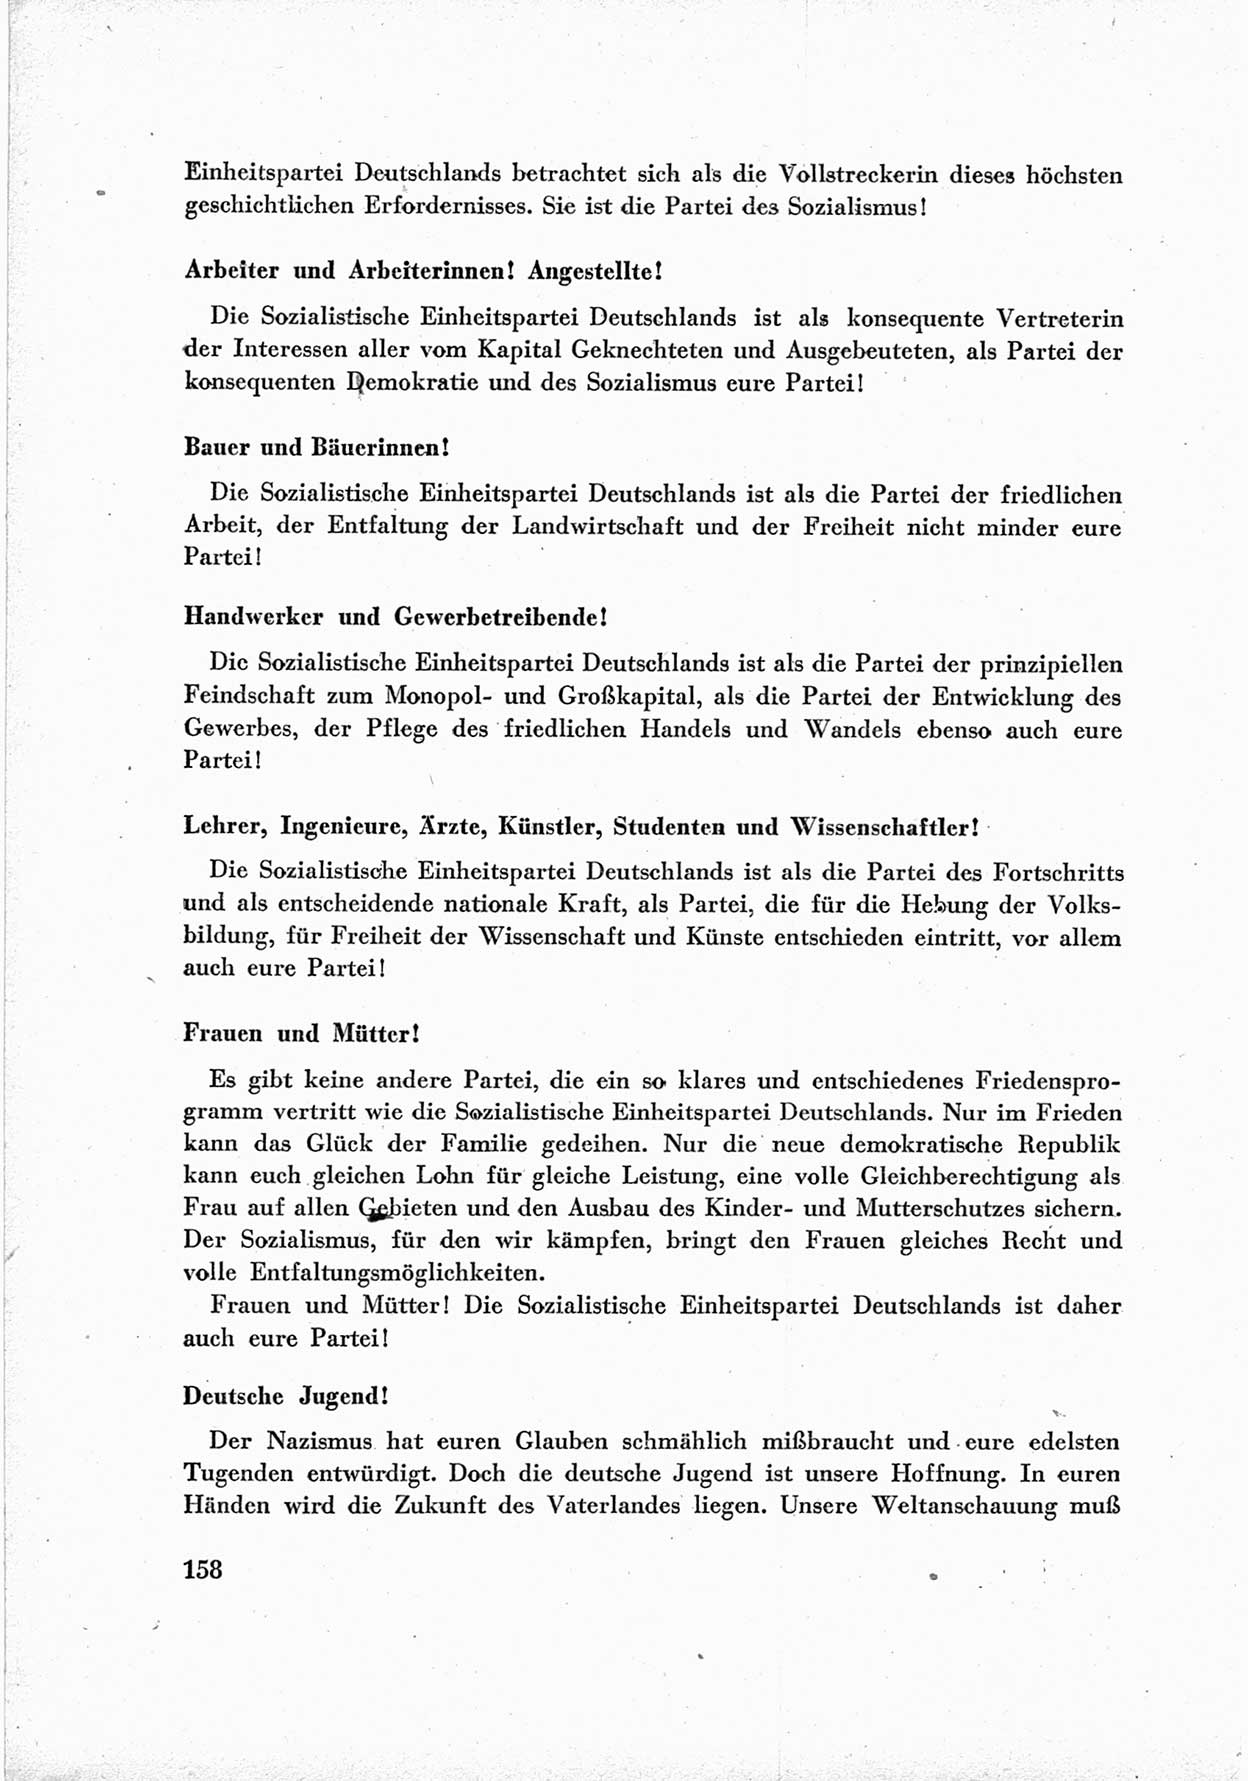 40. Parteitag der Sozialdemokratischen Partei Deutschlands (SPD) [Sowjetische Besatzungszone (SBZ) Deutschlands] am 19. und 20. April 1946 in Berlin, Seite 158 (40. PT SPD SBZ Dtl. 1946, S. 158)